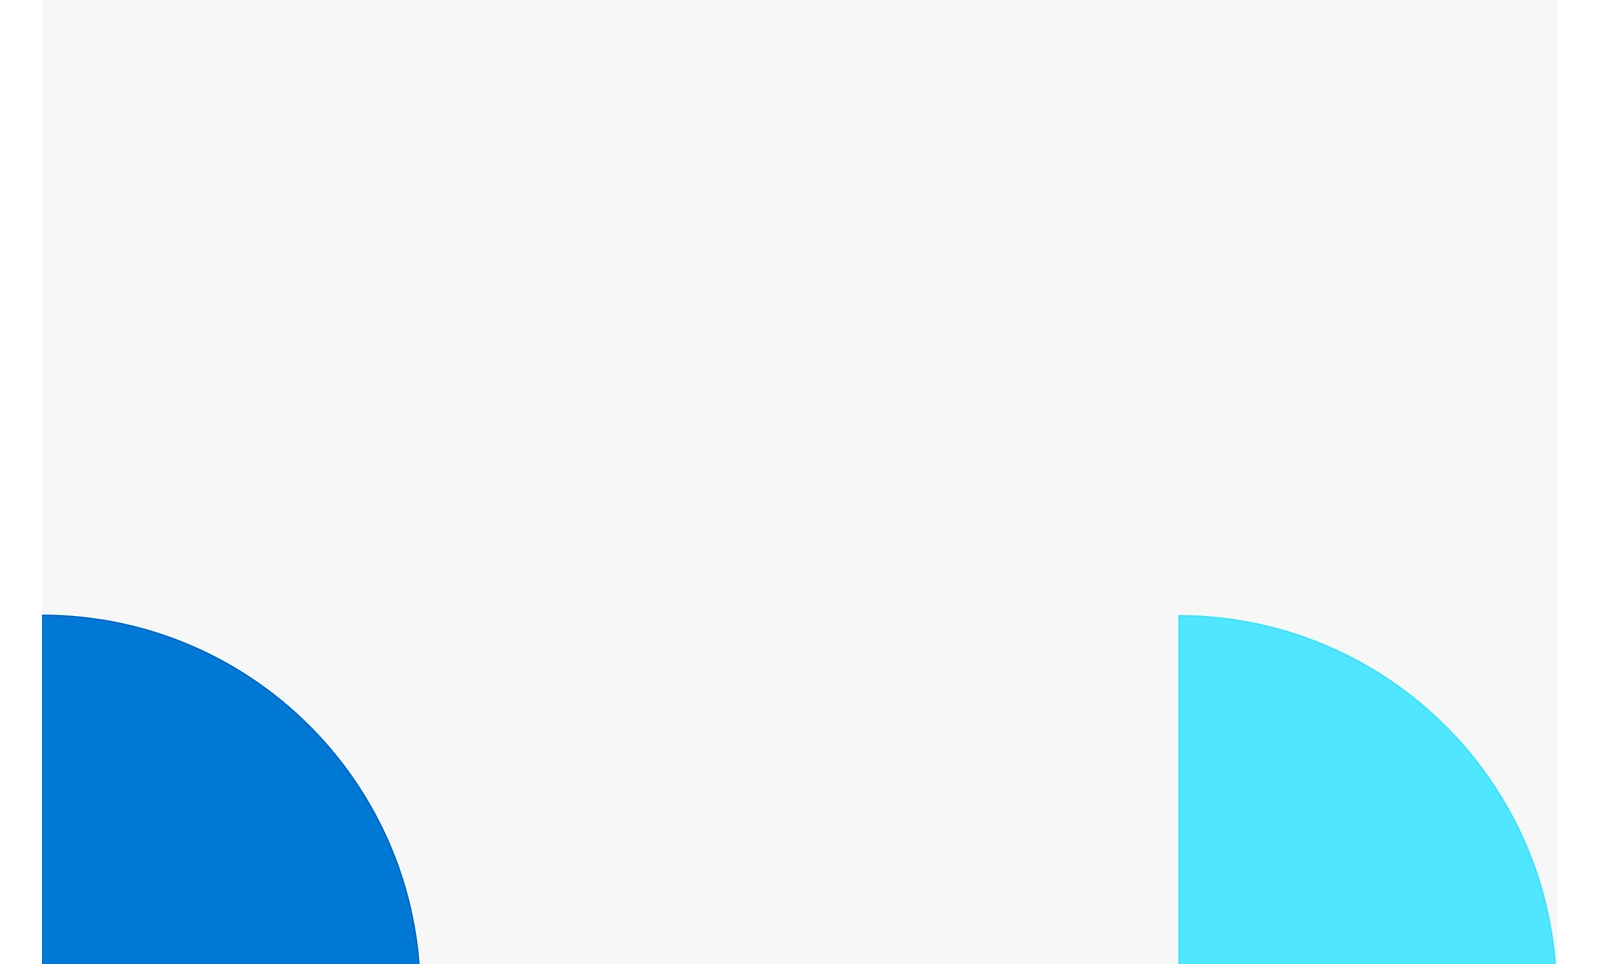 Twee overlappende ronde vormen met een witte achtergrond, één blauw aan de linkerkant en een lichter blauw aan de rechterkant.